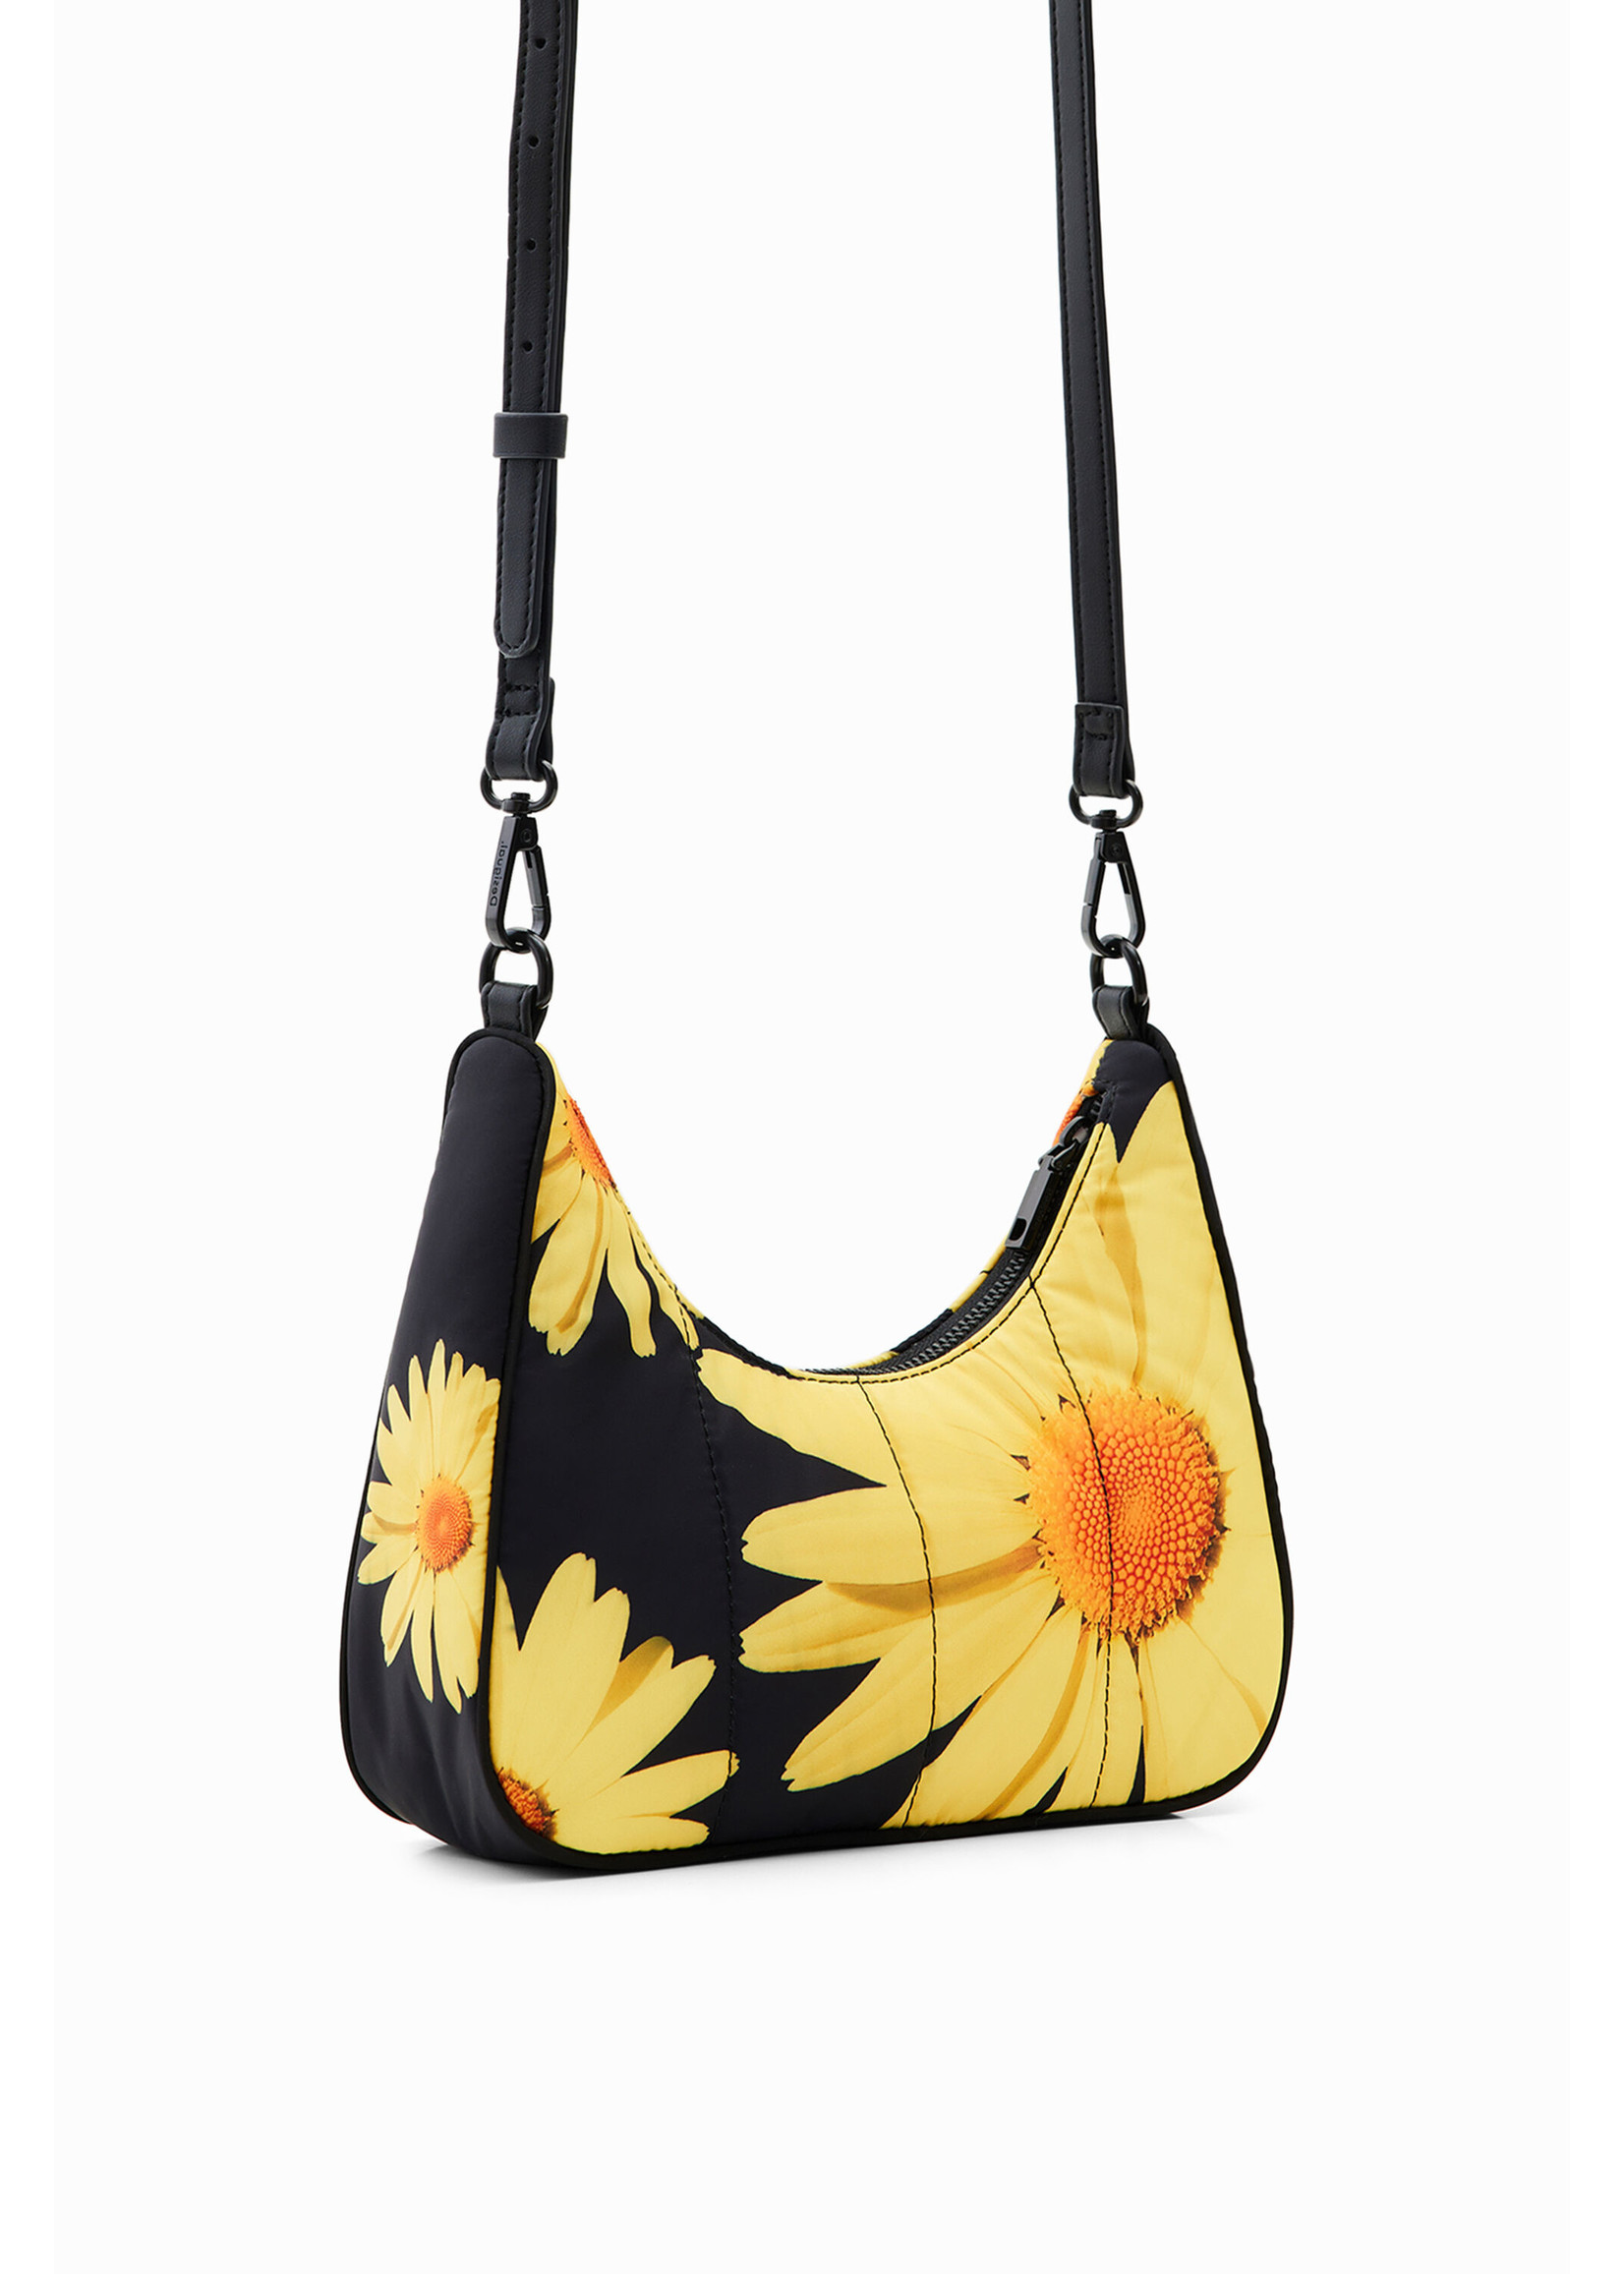 DESIGUAL M. Christian Lacroix small floral bag